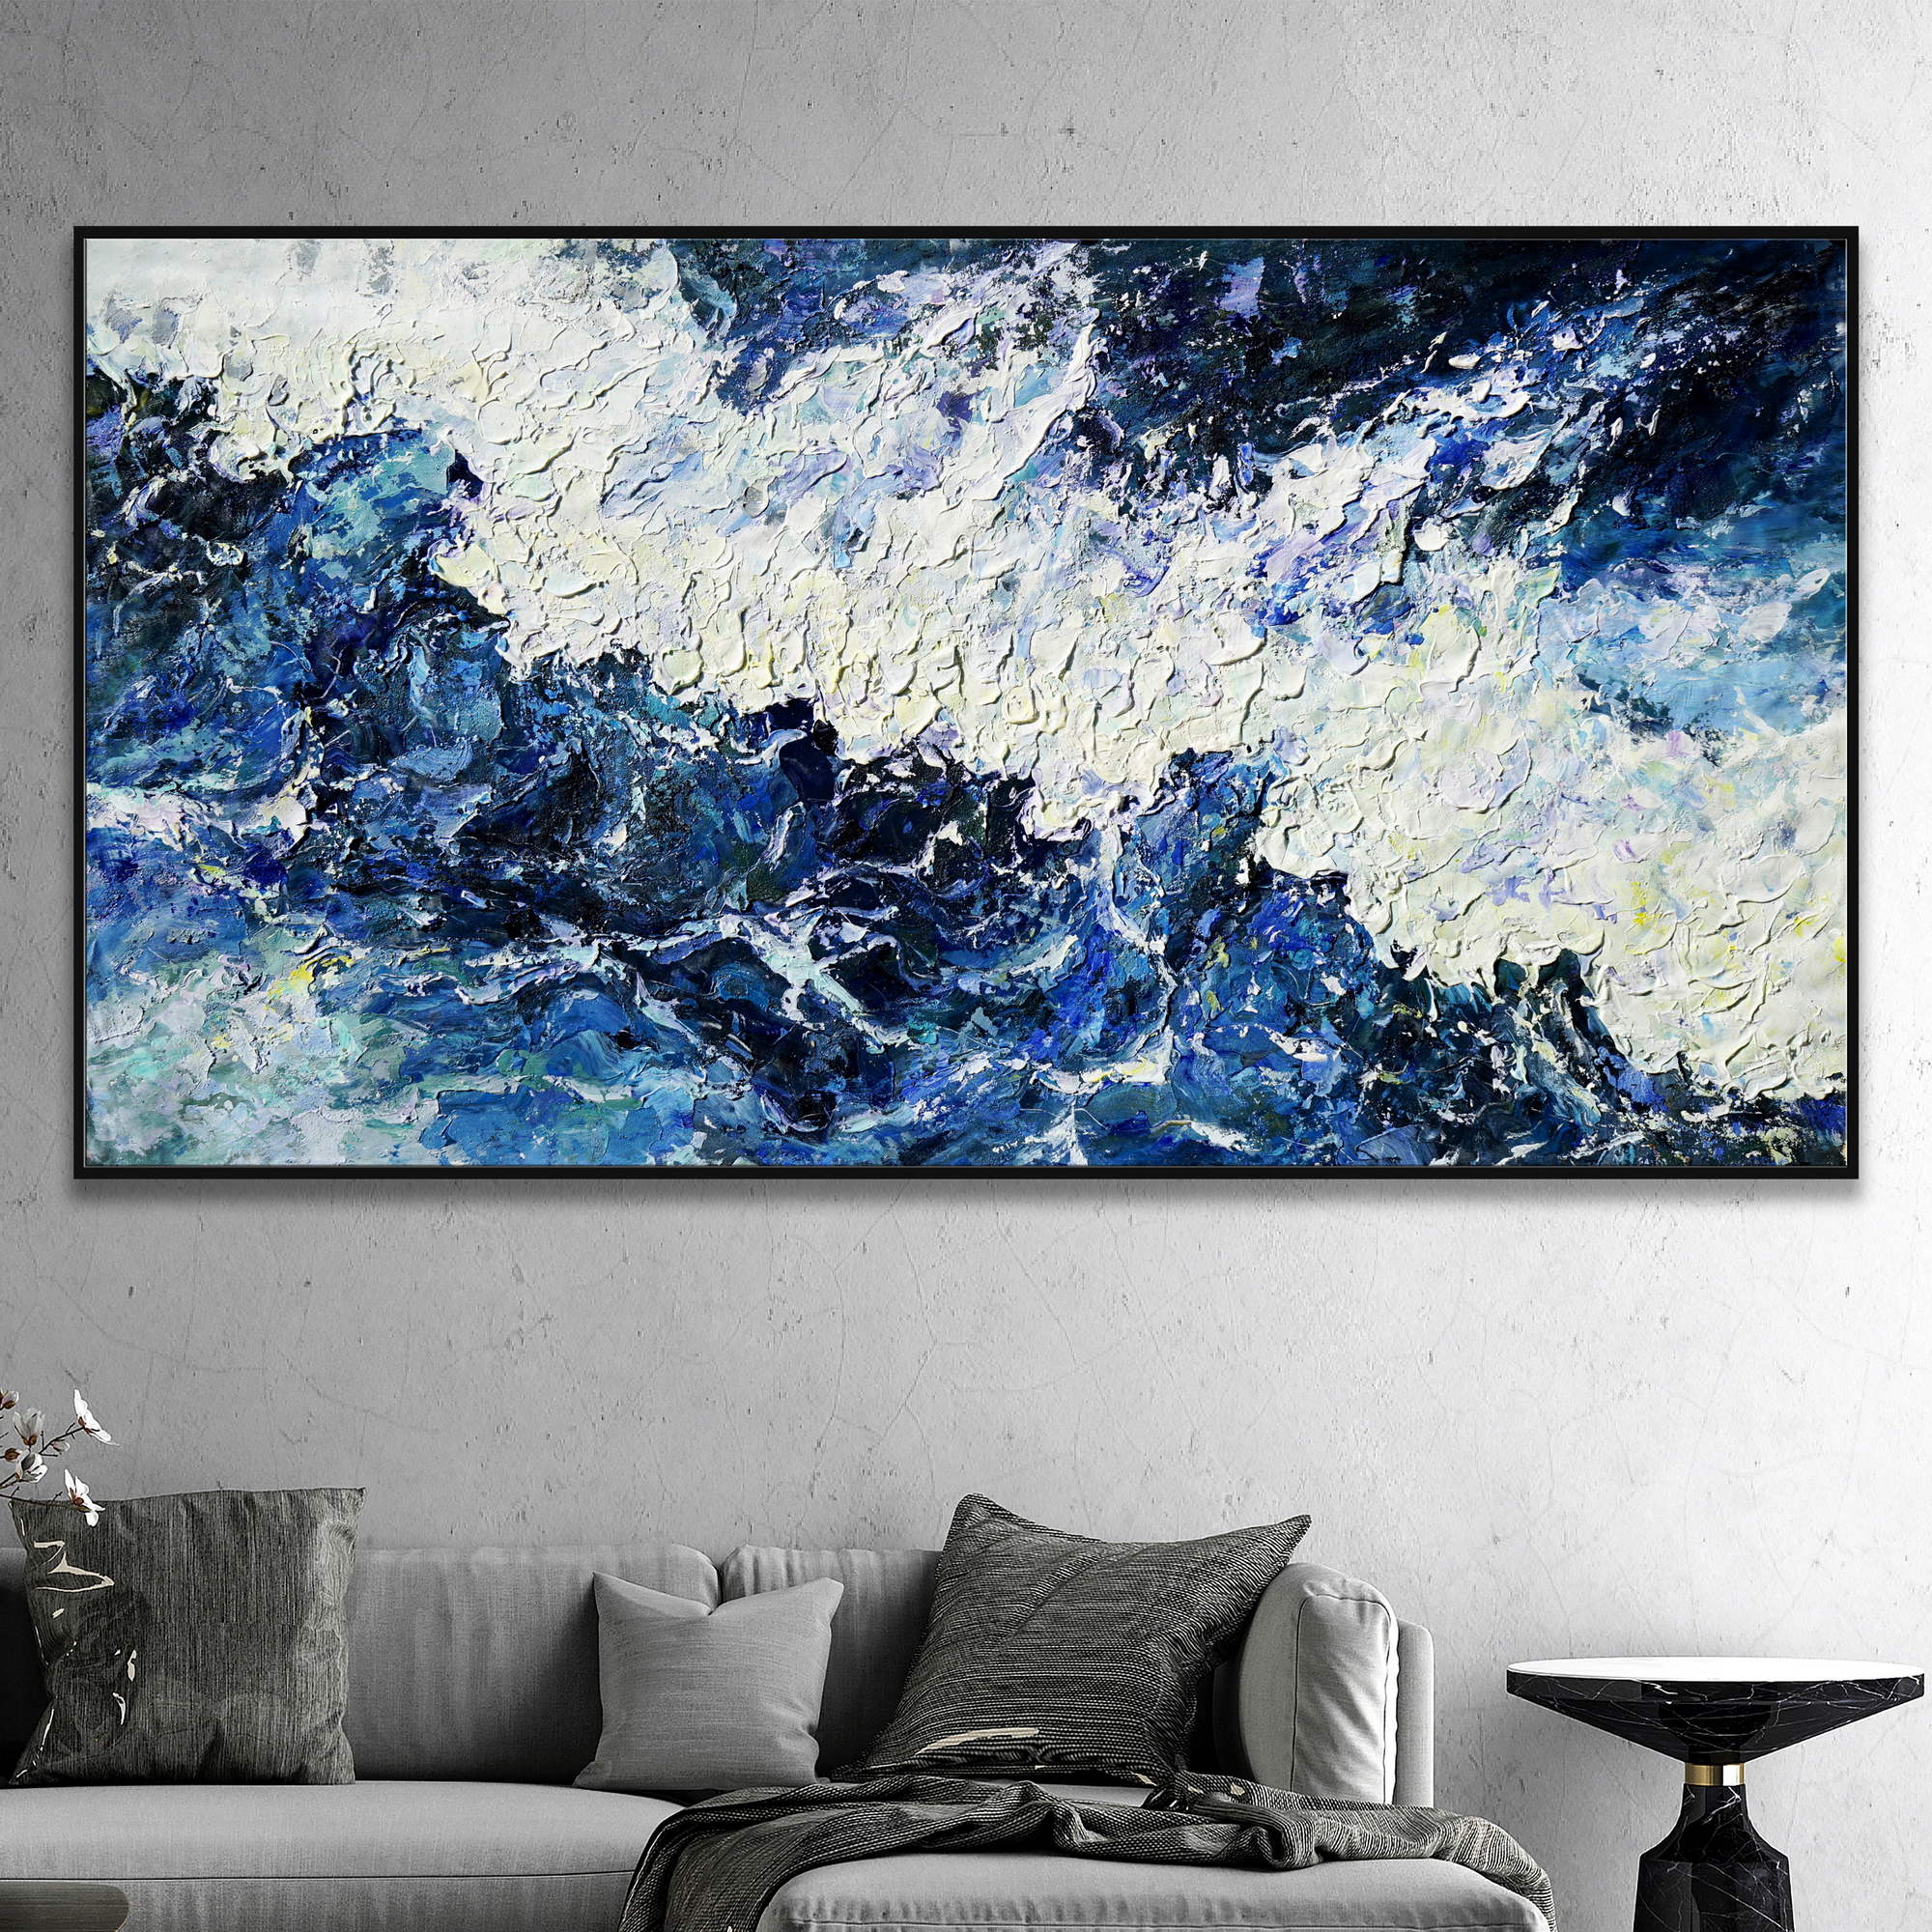 Dipinto di un mare in tempesta con onde e creste schiumose in blu e bianco